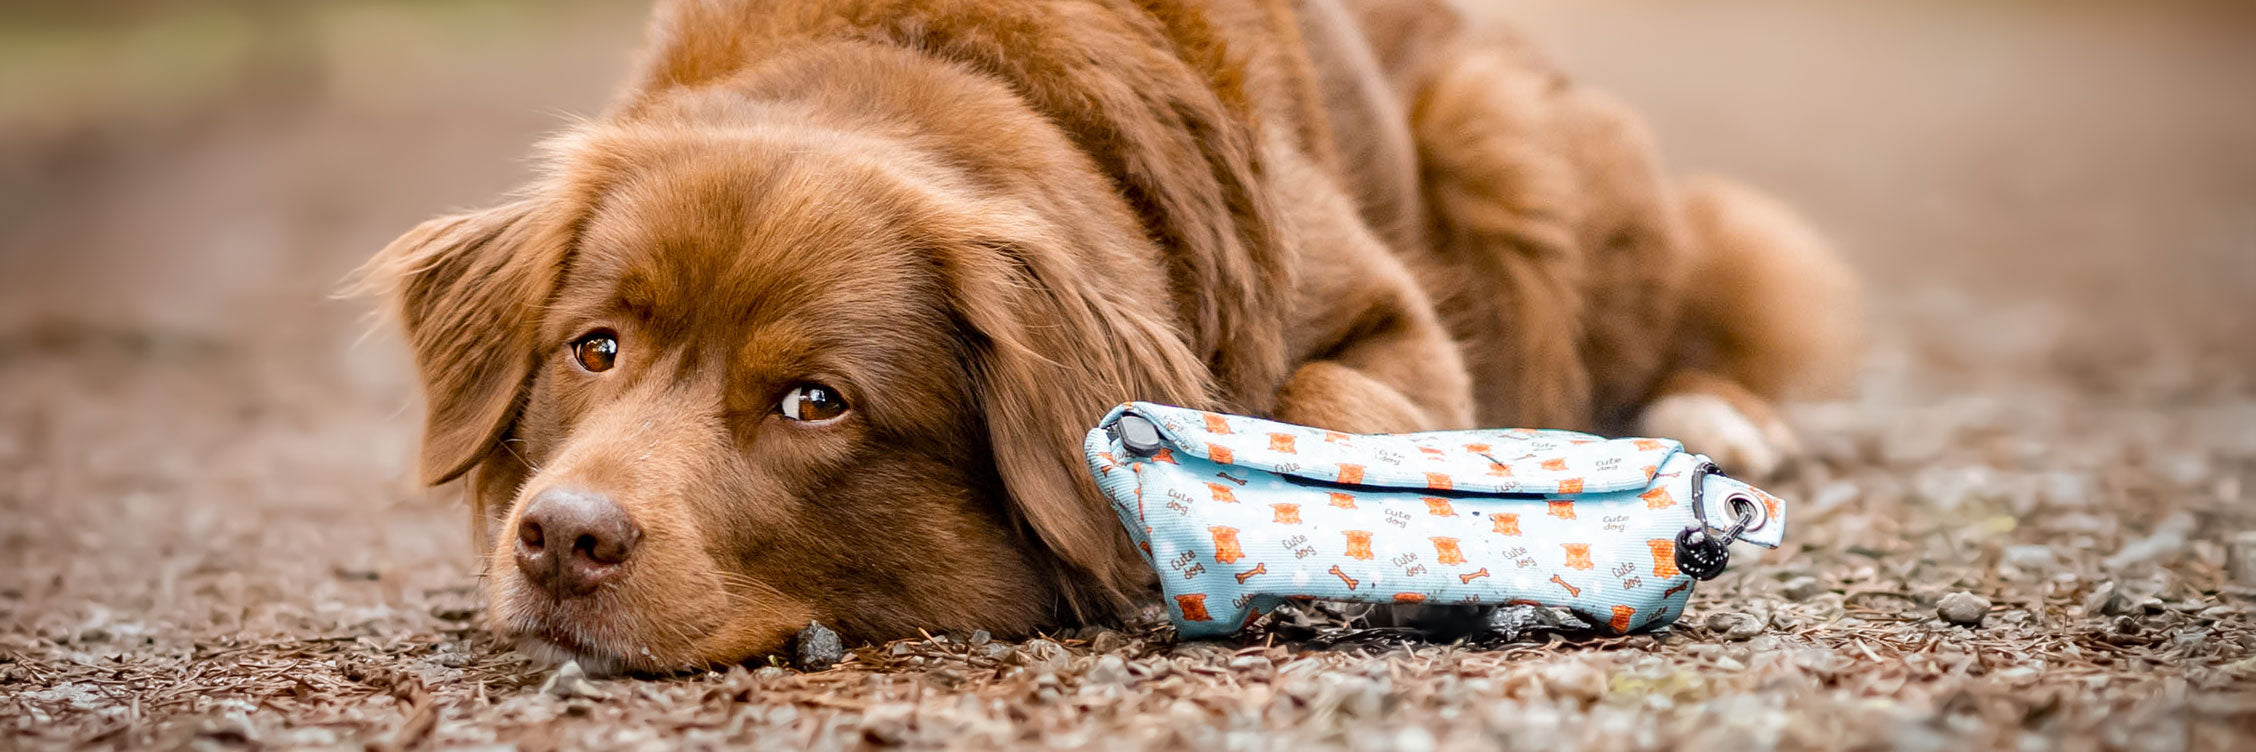 Süßer brauner Hund macht eine Pause von seinem Hundetraining. Er liegt auf dem Boden mit einem Futterbeutel.